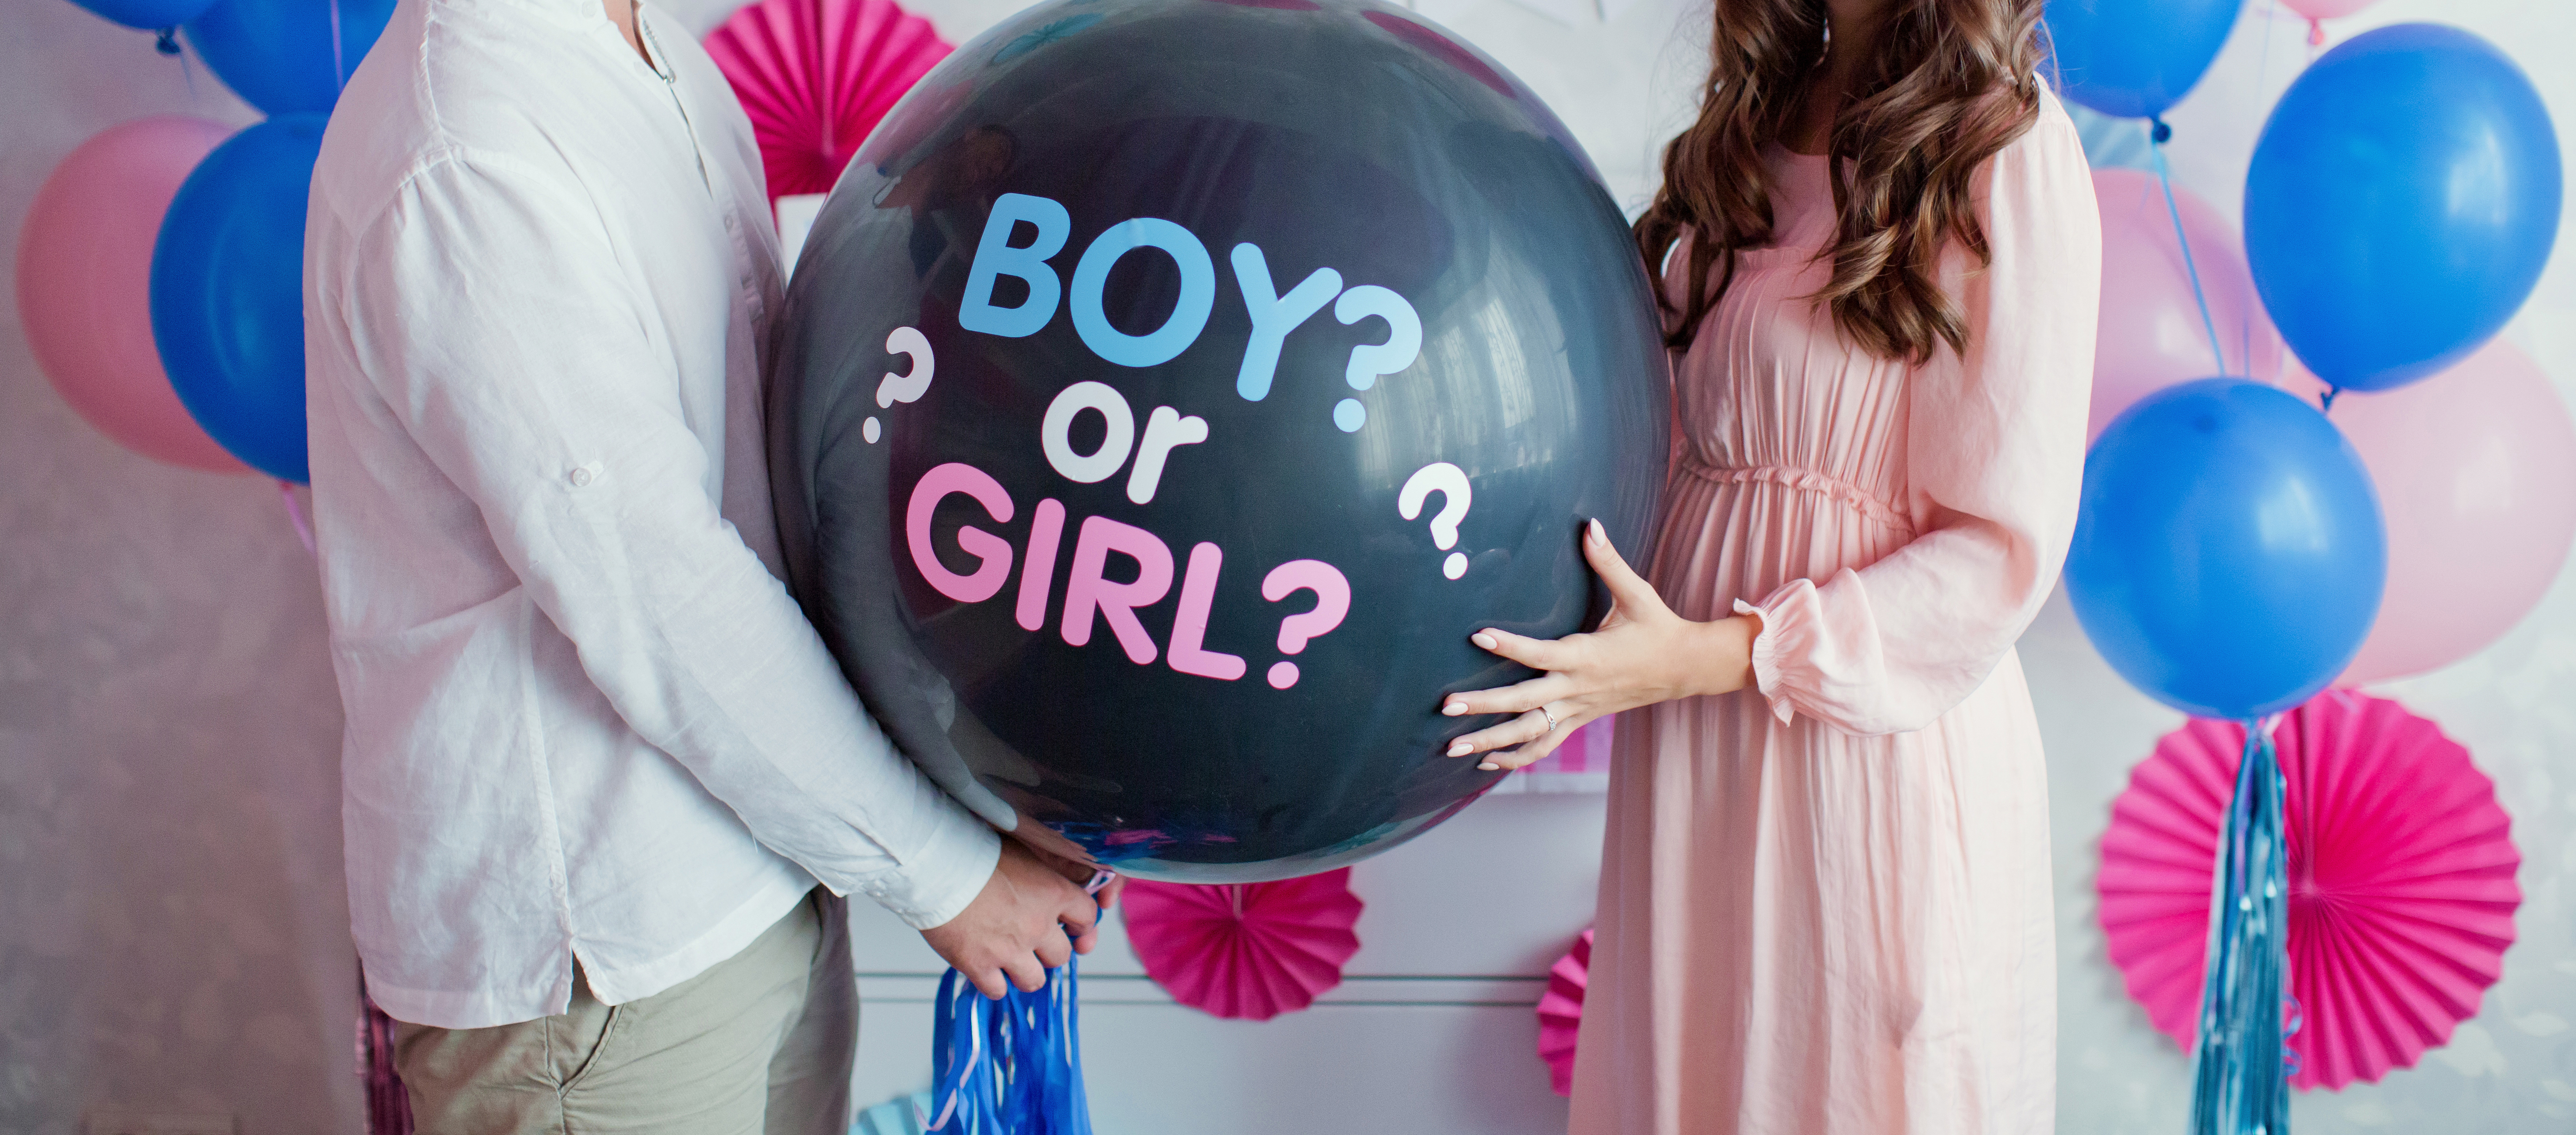 Una pareja sujetando un globo de niño y una niña | Fuente: Shutterstock